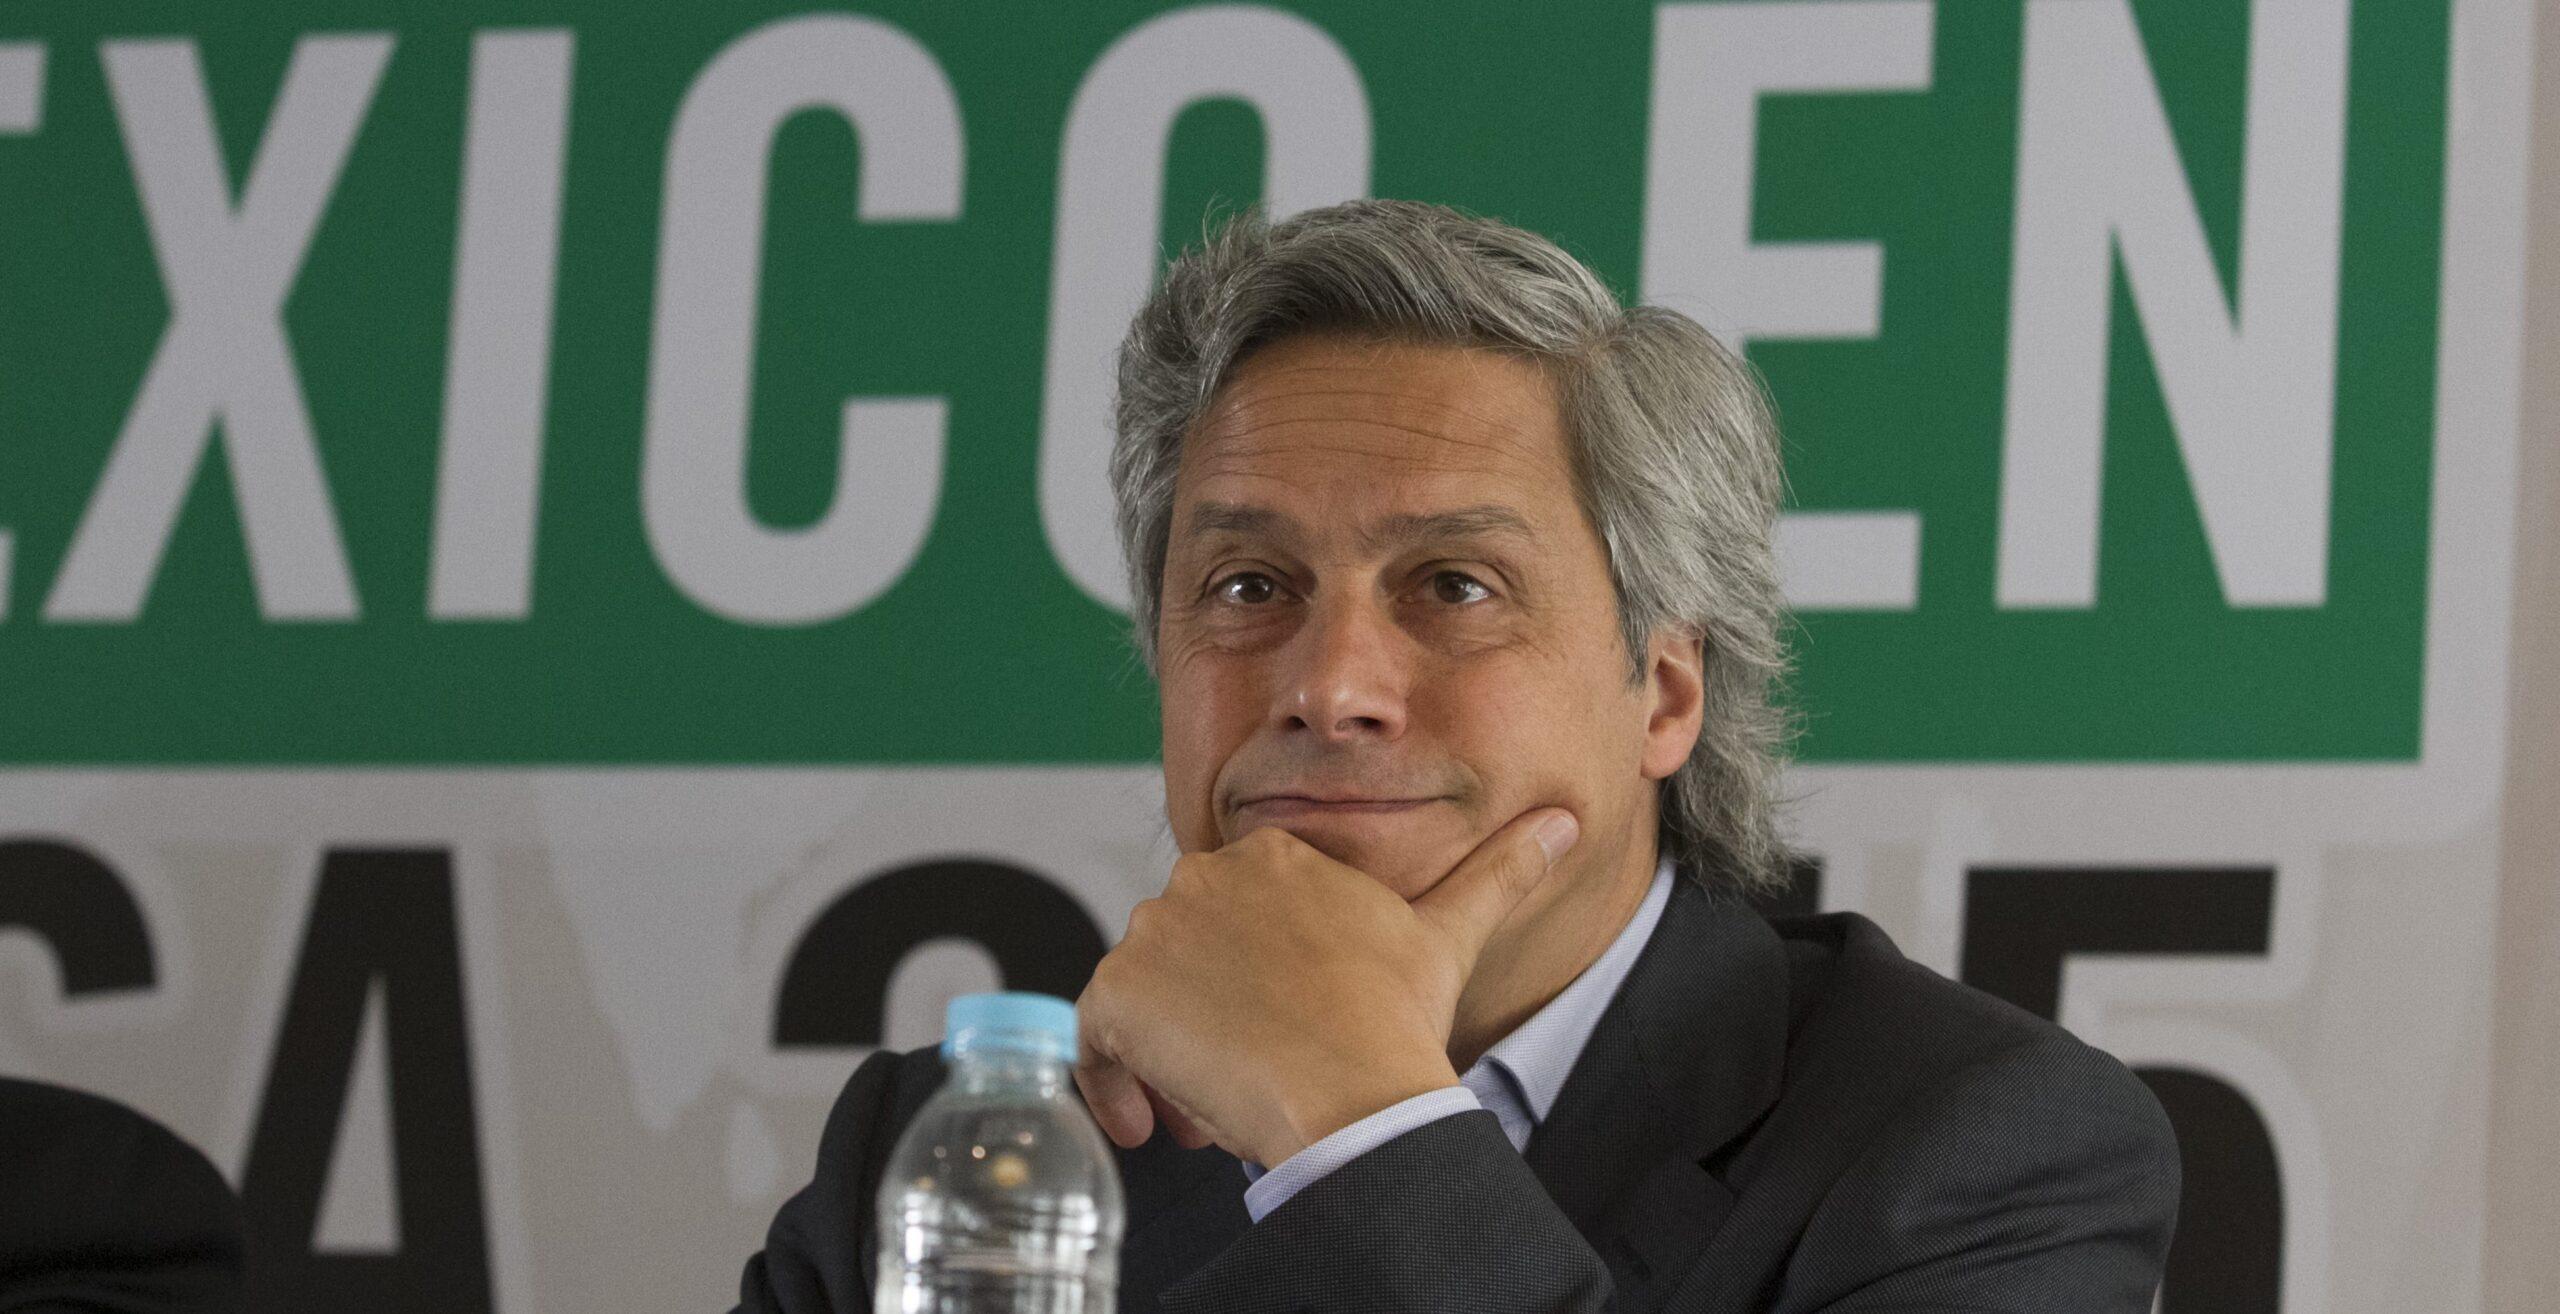 Gobierno de Peña intimida al empresario Claudio X. González por hablar de corrupción, revela NYT